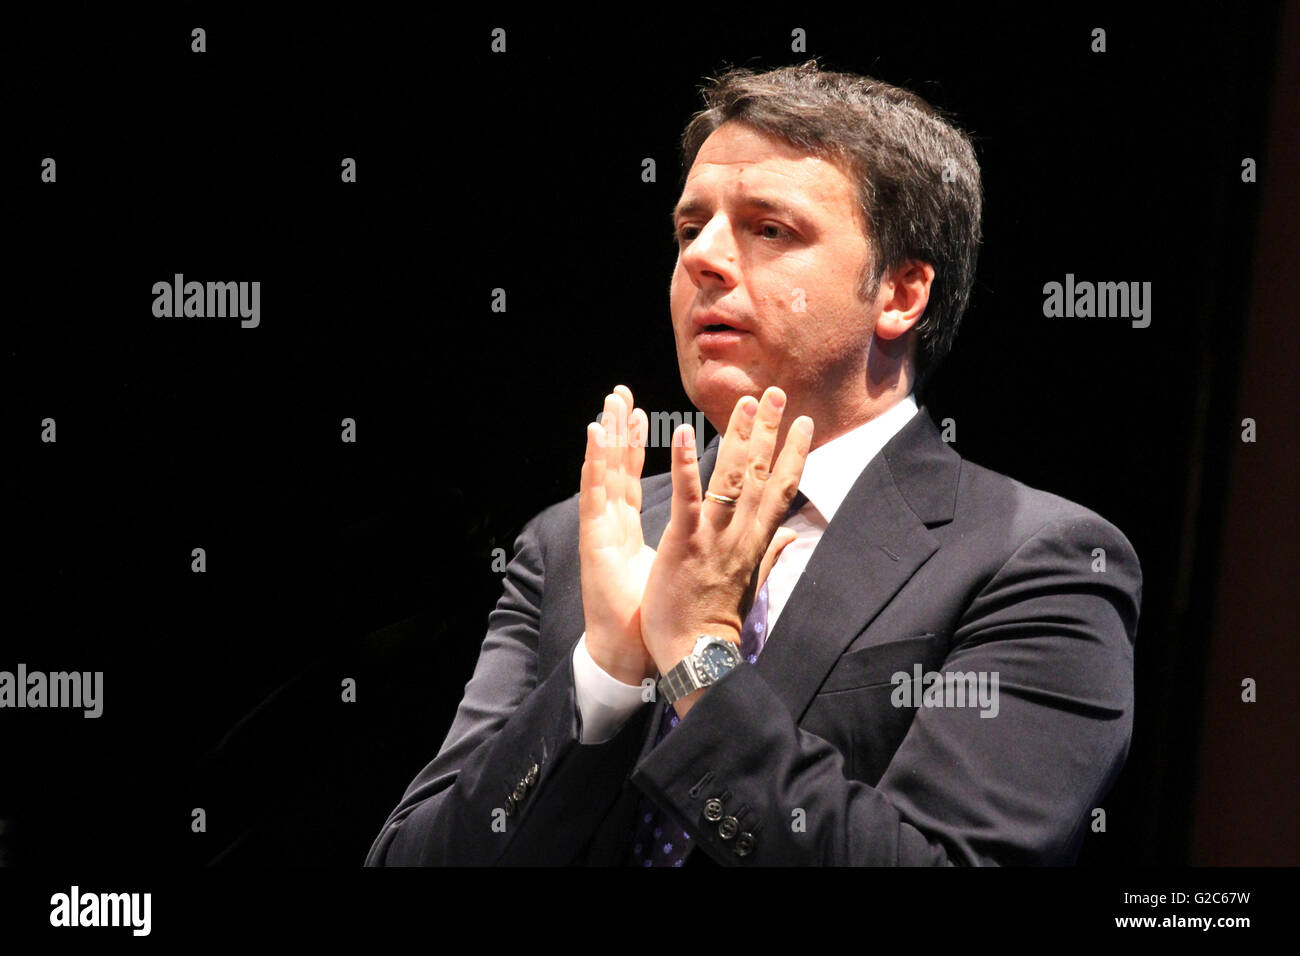 Matteo Renzi est un homme politique italien. Il est président du Conseil des ministres de la République italienne à partir de février 2013 Banque D'Images